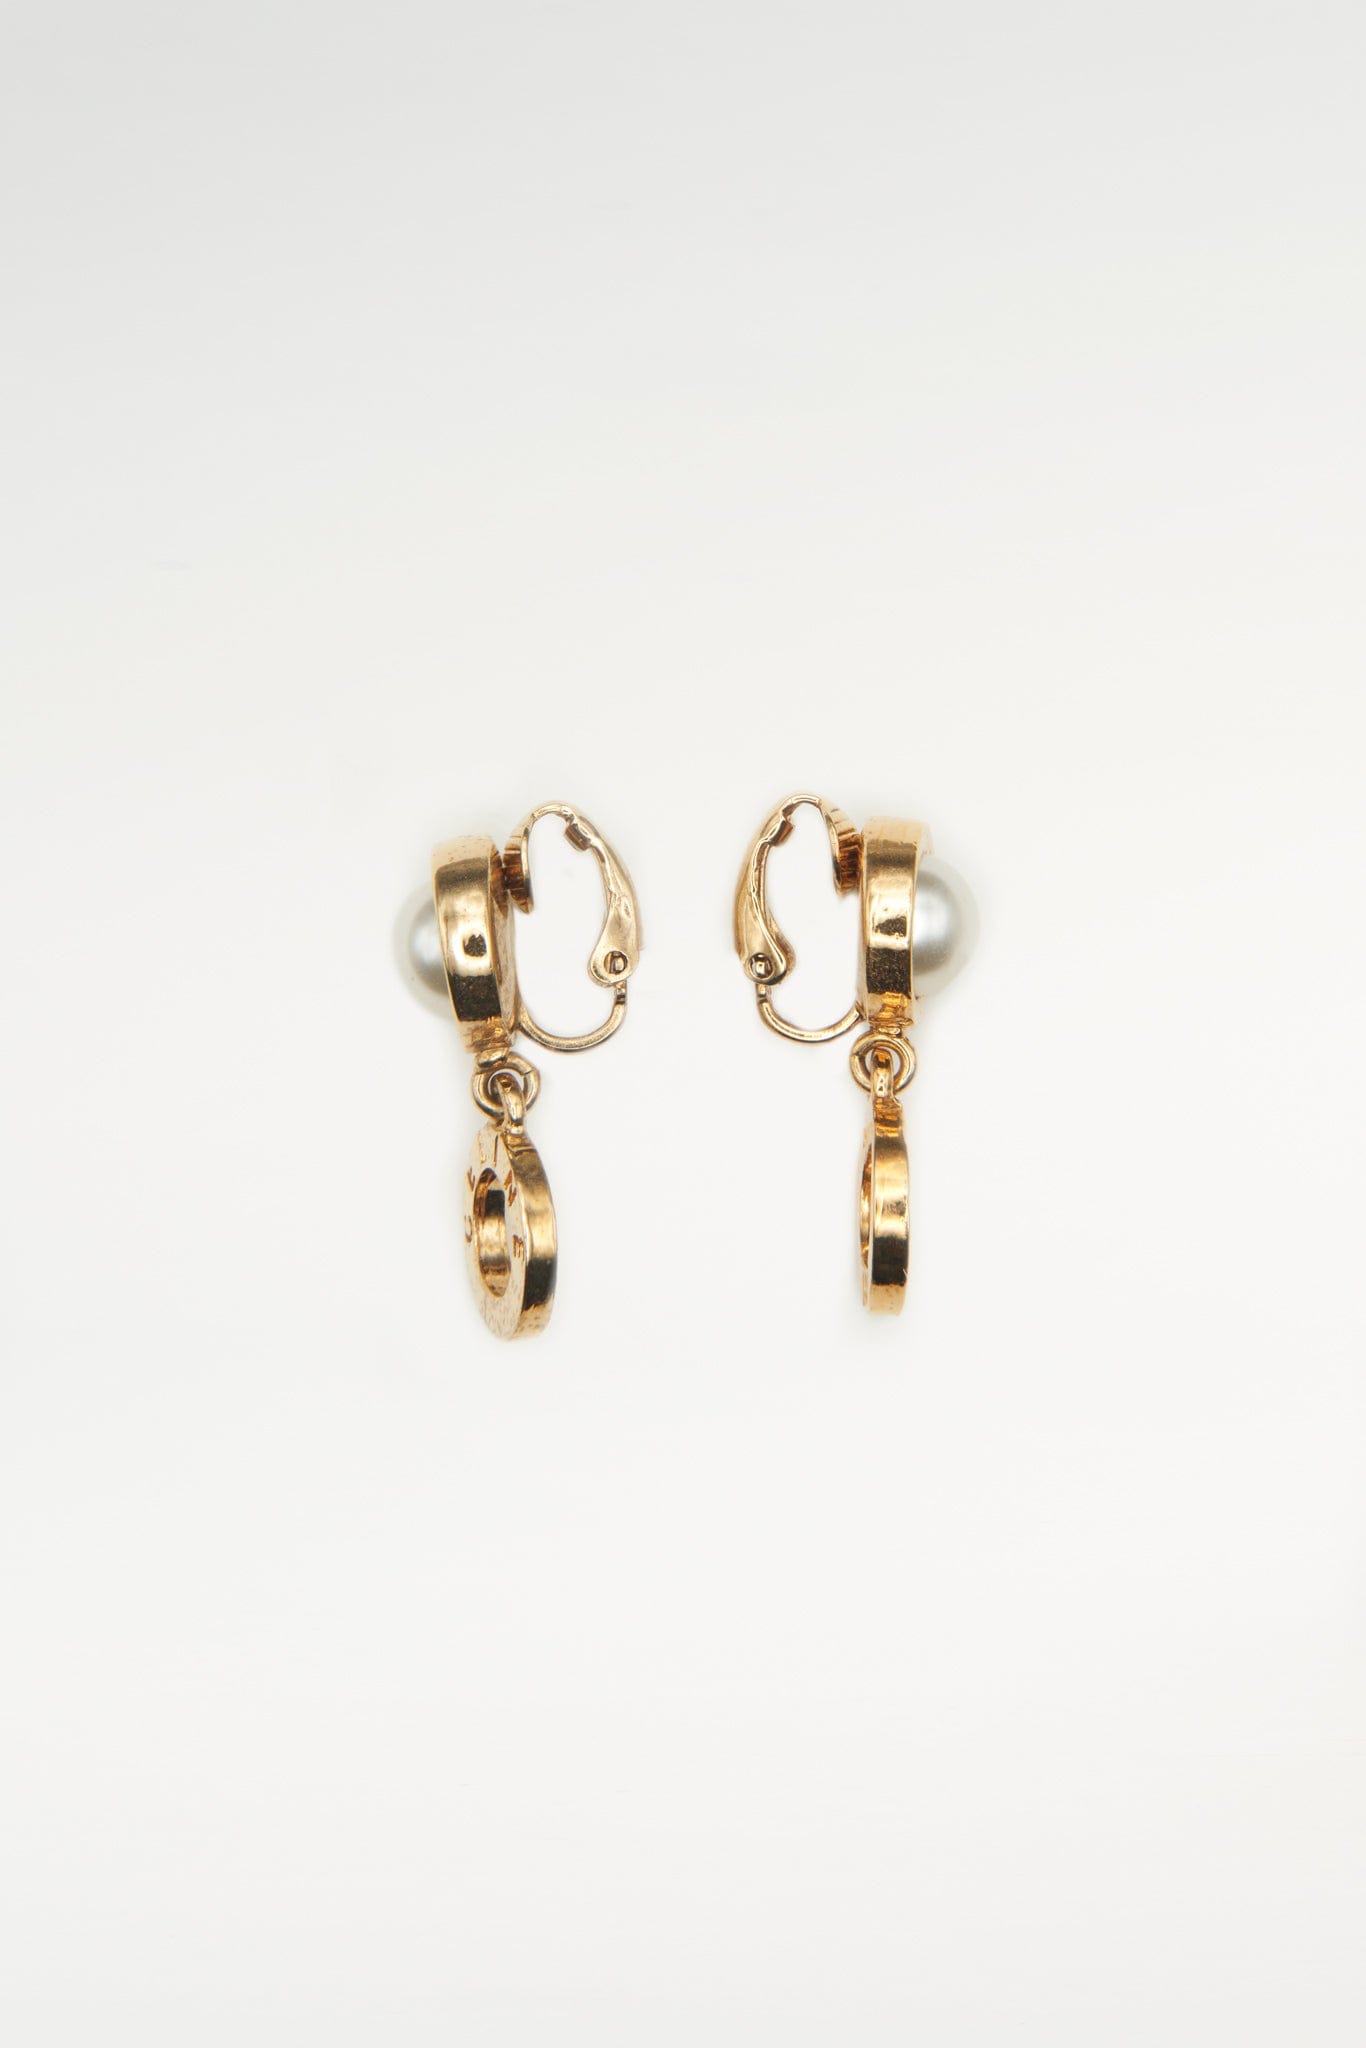 Vintage Gold Celine faux Pearl Earrings – The Hosta